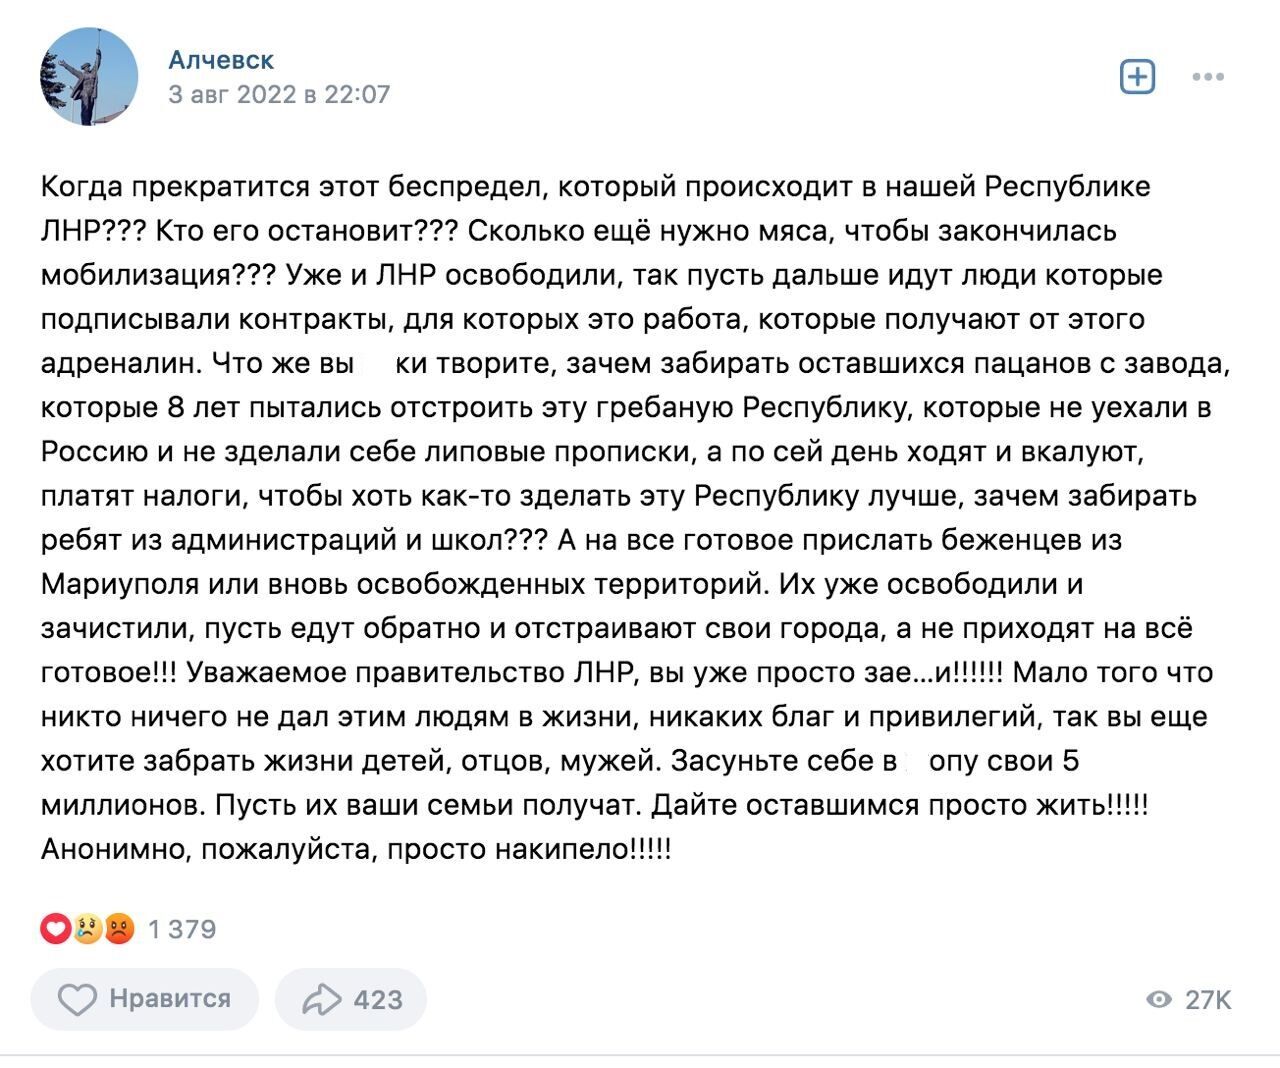 Анонімний пост в одному з найпопулярніших гуртів Алчевська